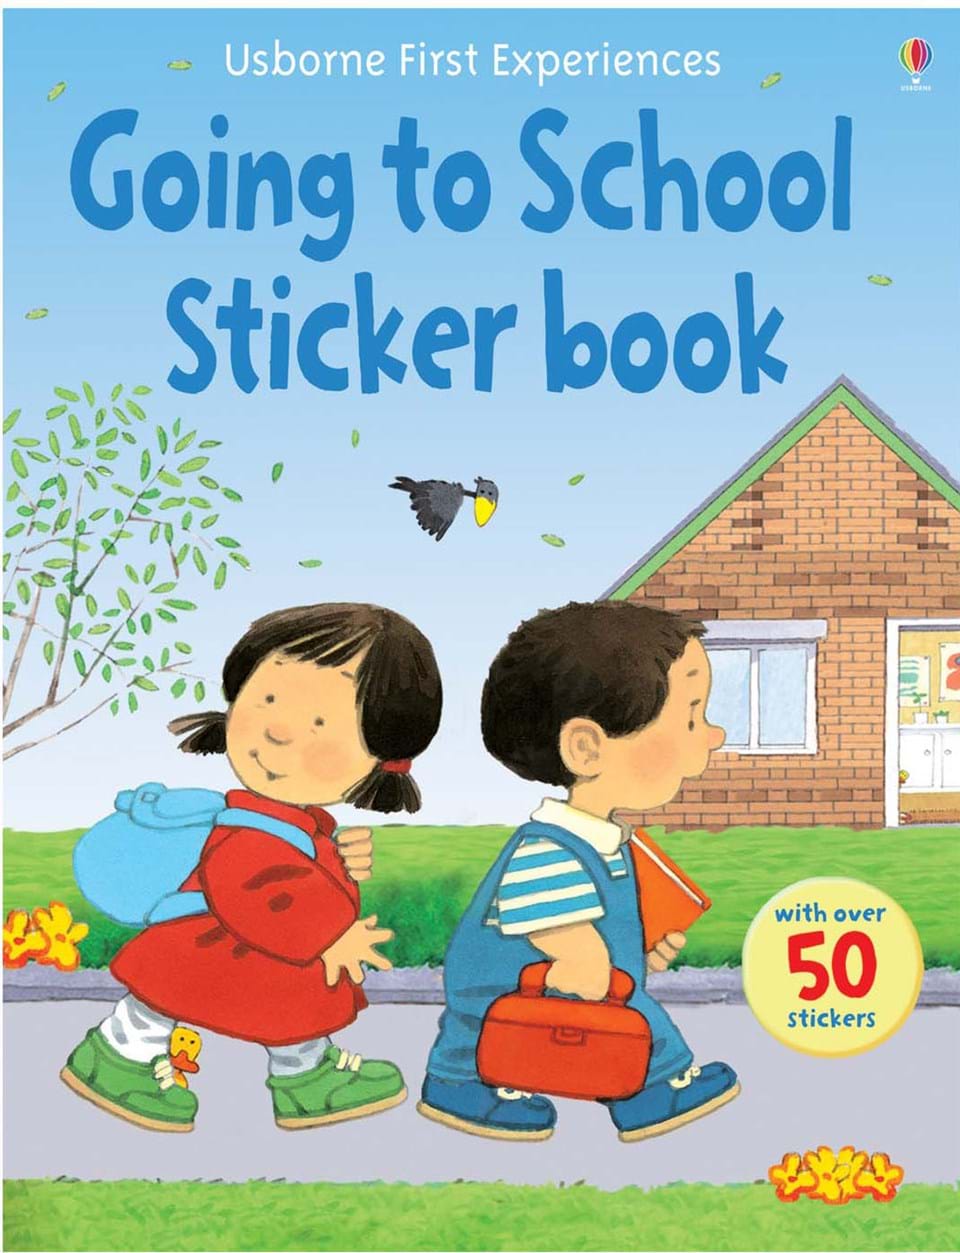 Going to school sticker book - immagine di copertina